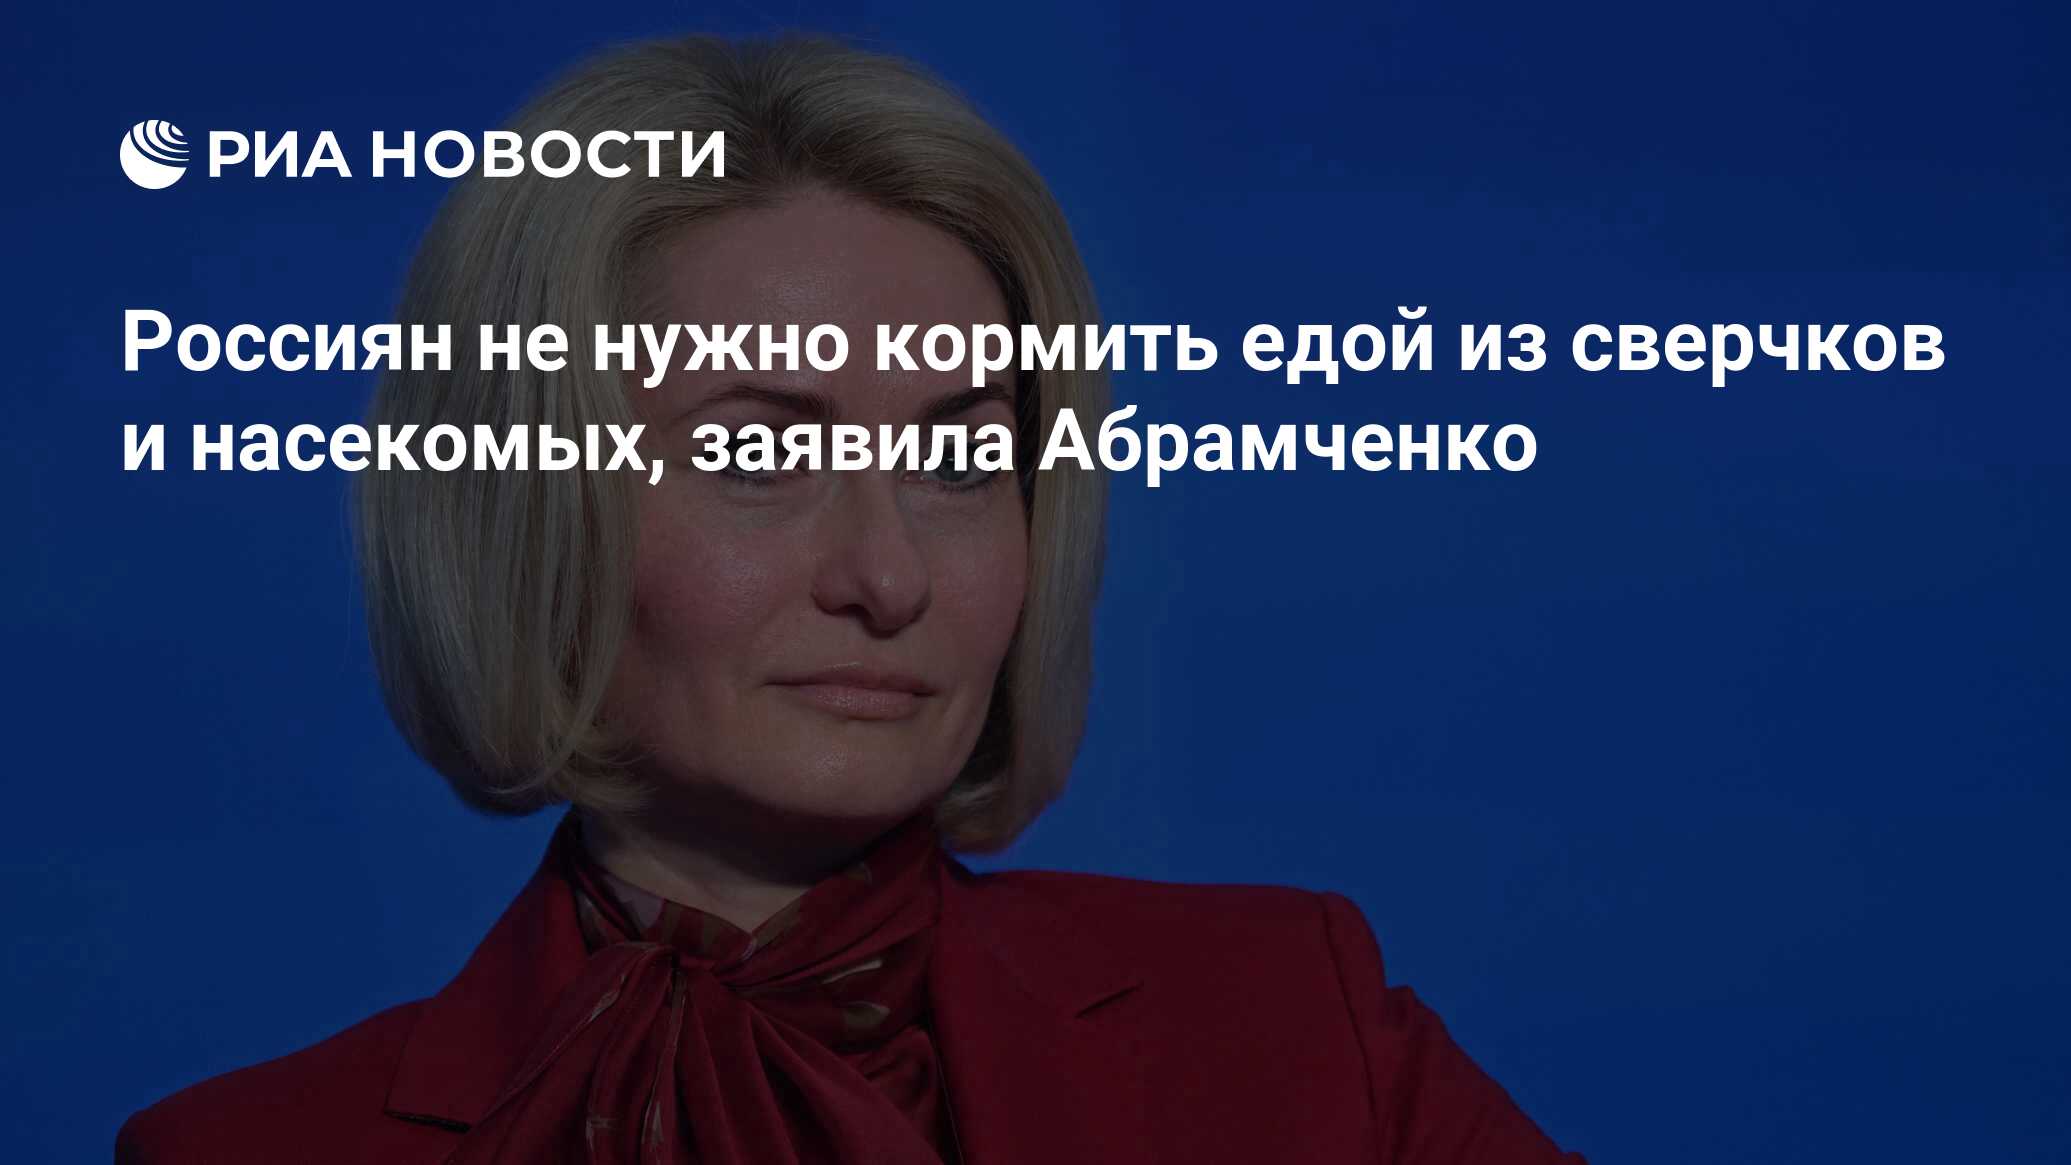 Россиян не нужно кормить едой из сверчков и насекомых, заявила Абрамченко